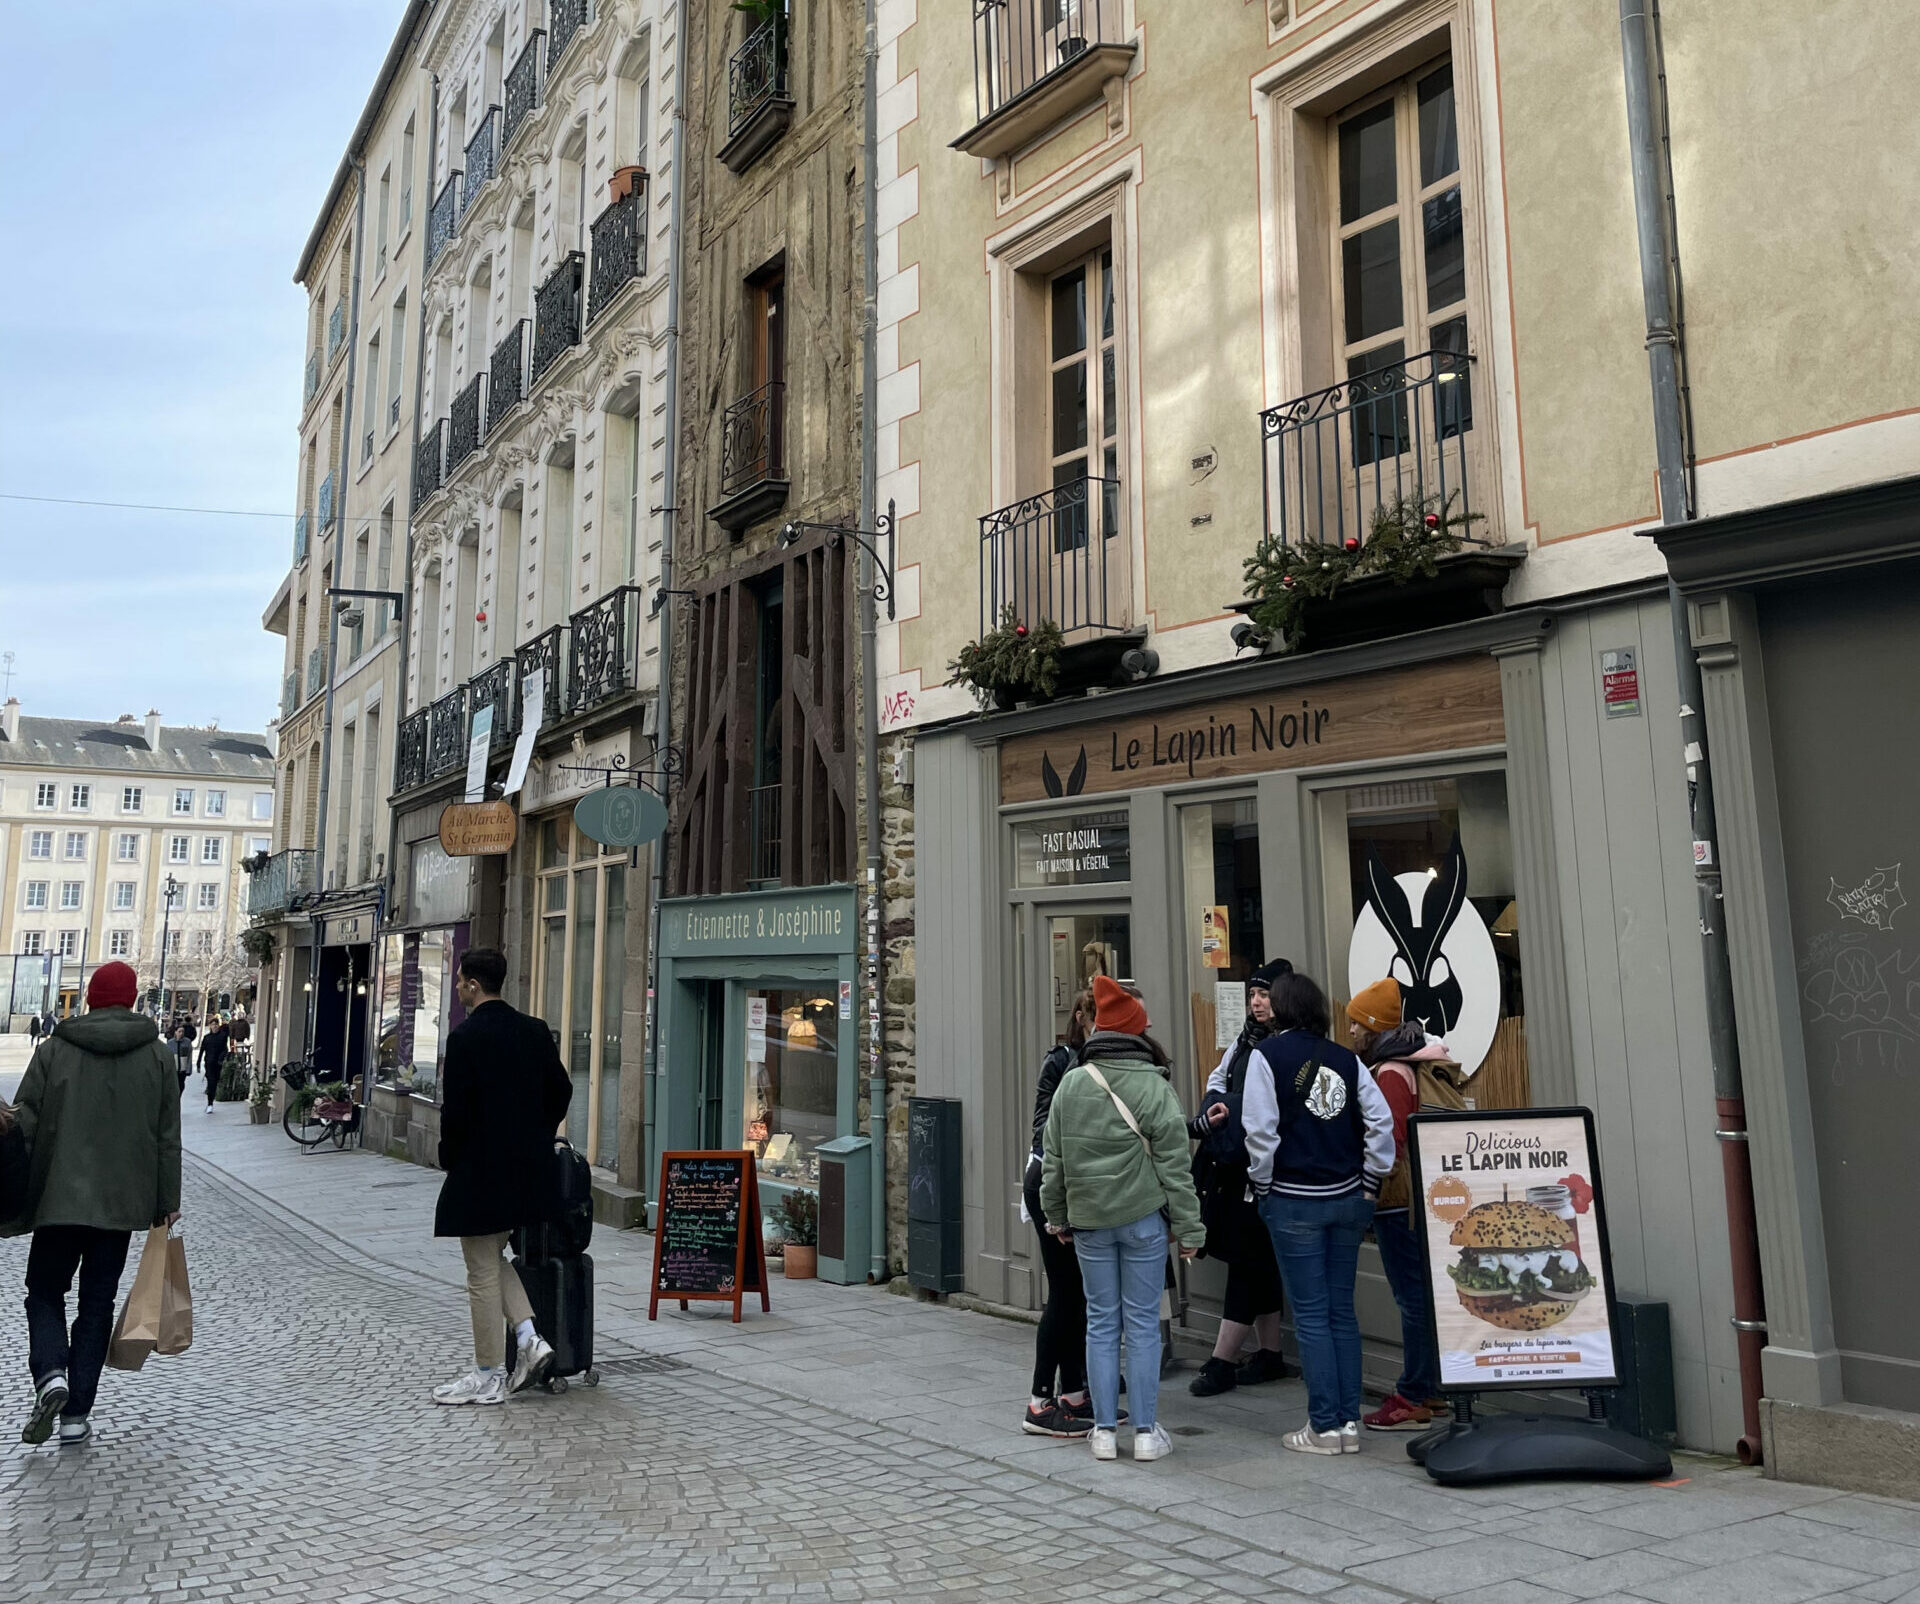 Le lapin noir rennes 2 Rue du Vau Saint-Germain, 35000 Rennes